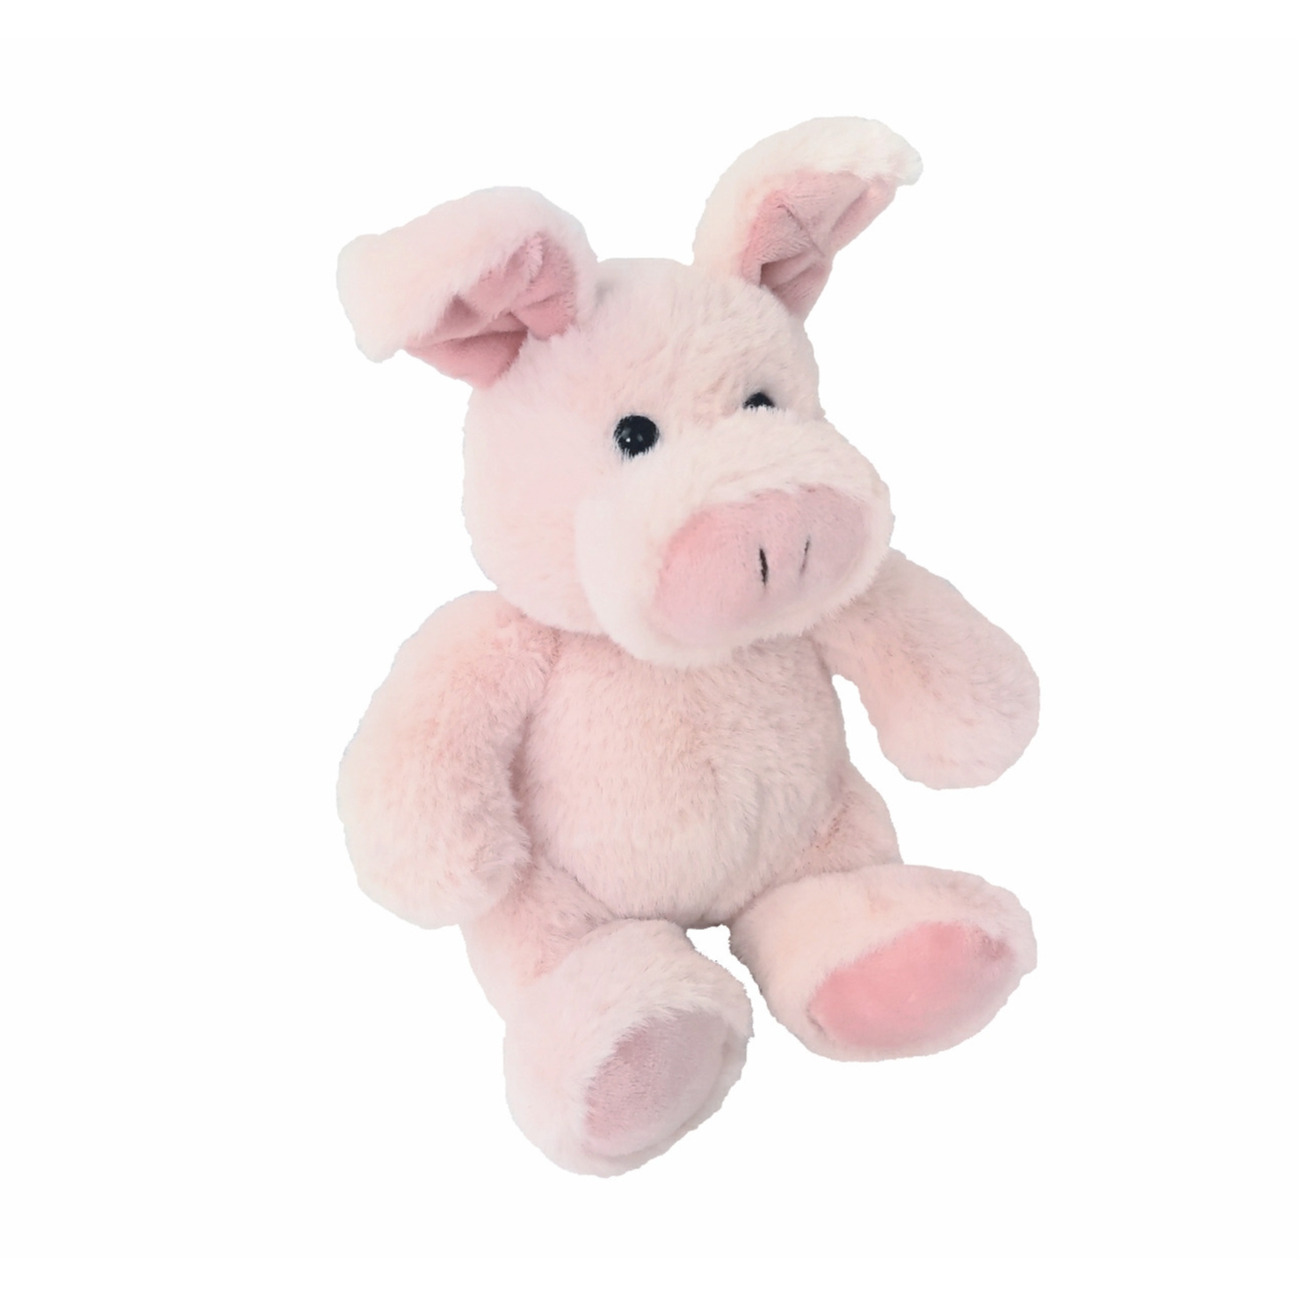 Inware Pluche varken-biggetje knuffel zittend roze polyester 16 cm